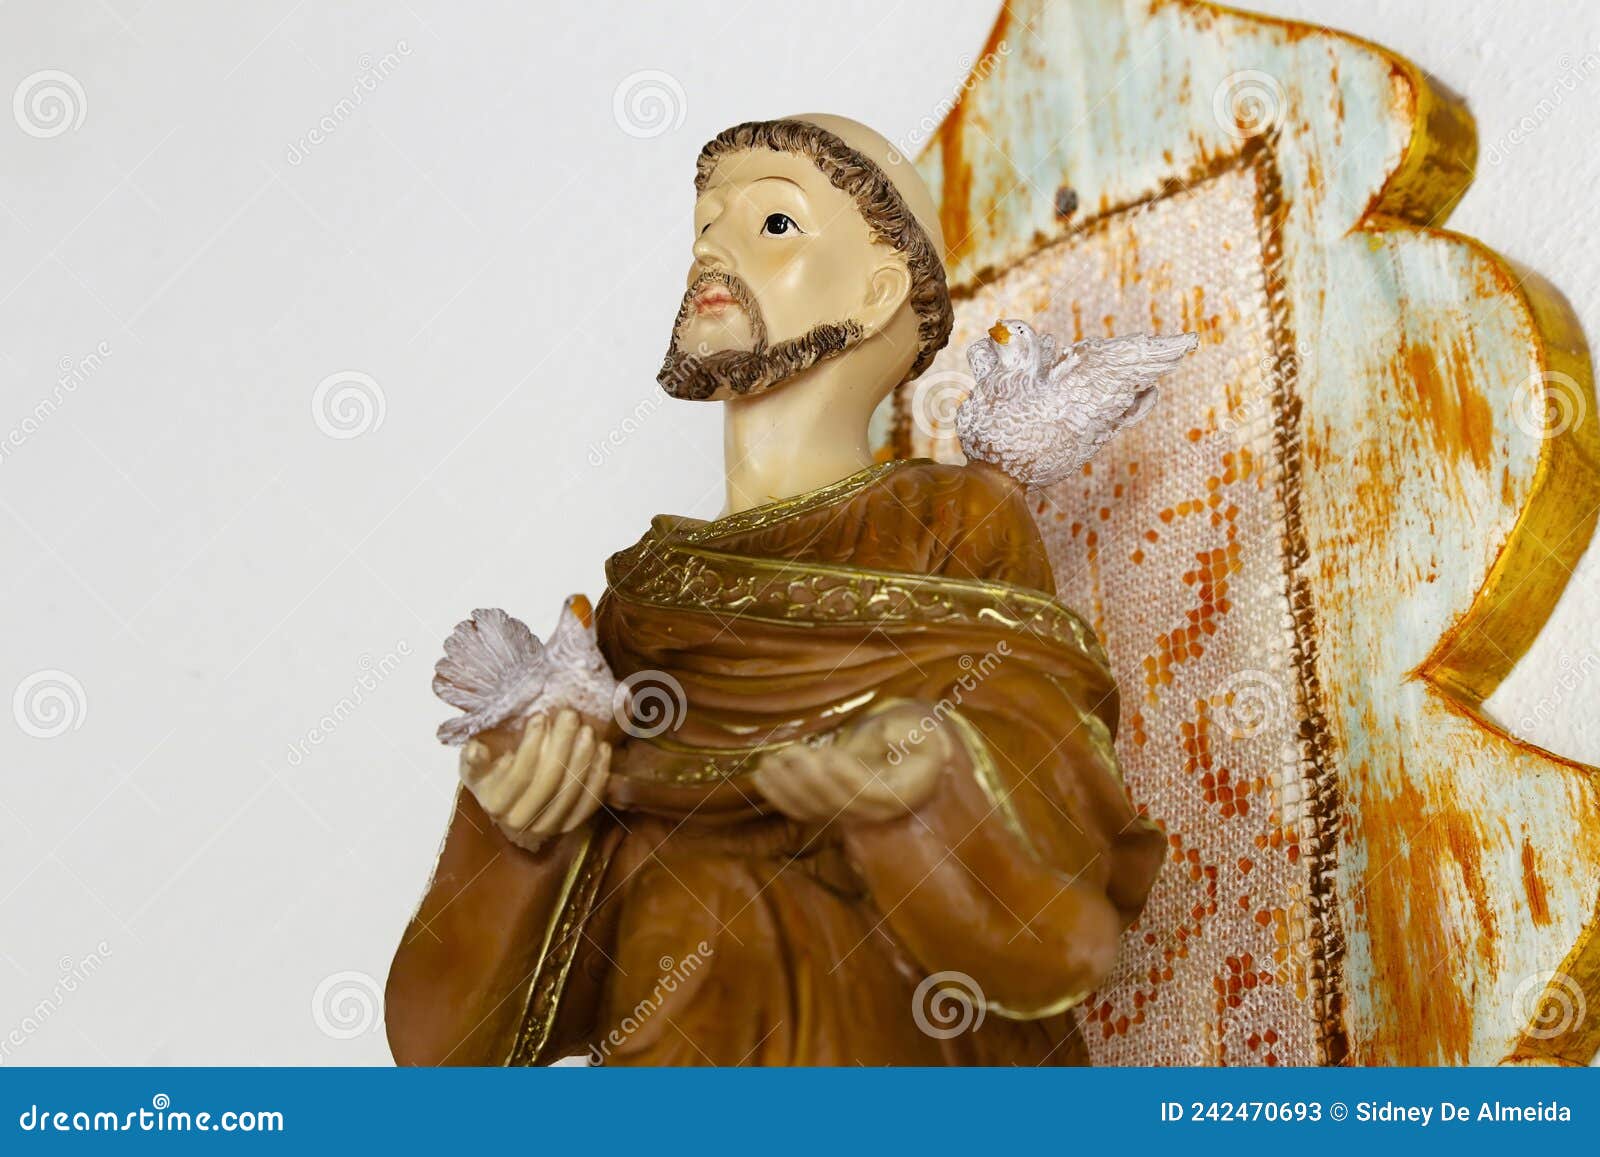 Saint Francis of Assisi Catholic Image Stock Image - Image of christian ...